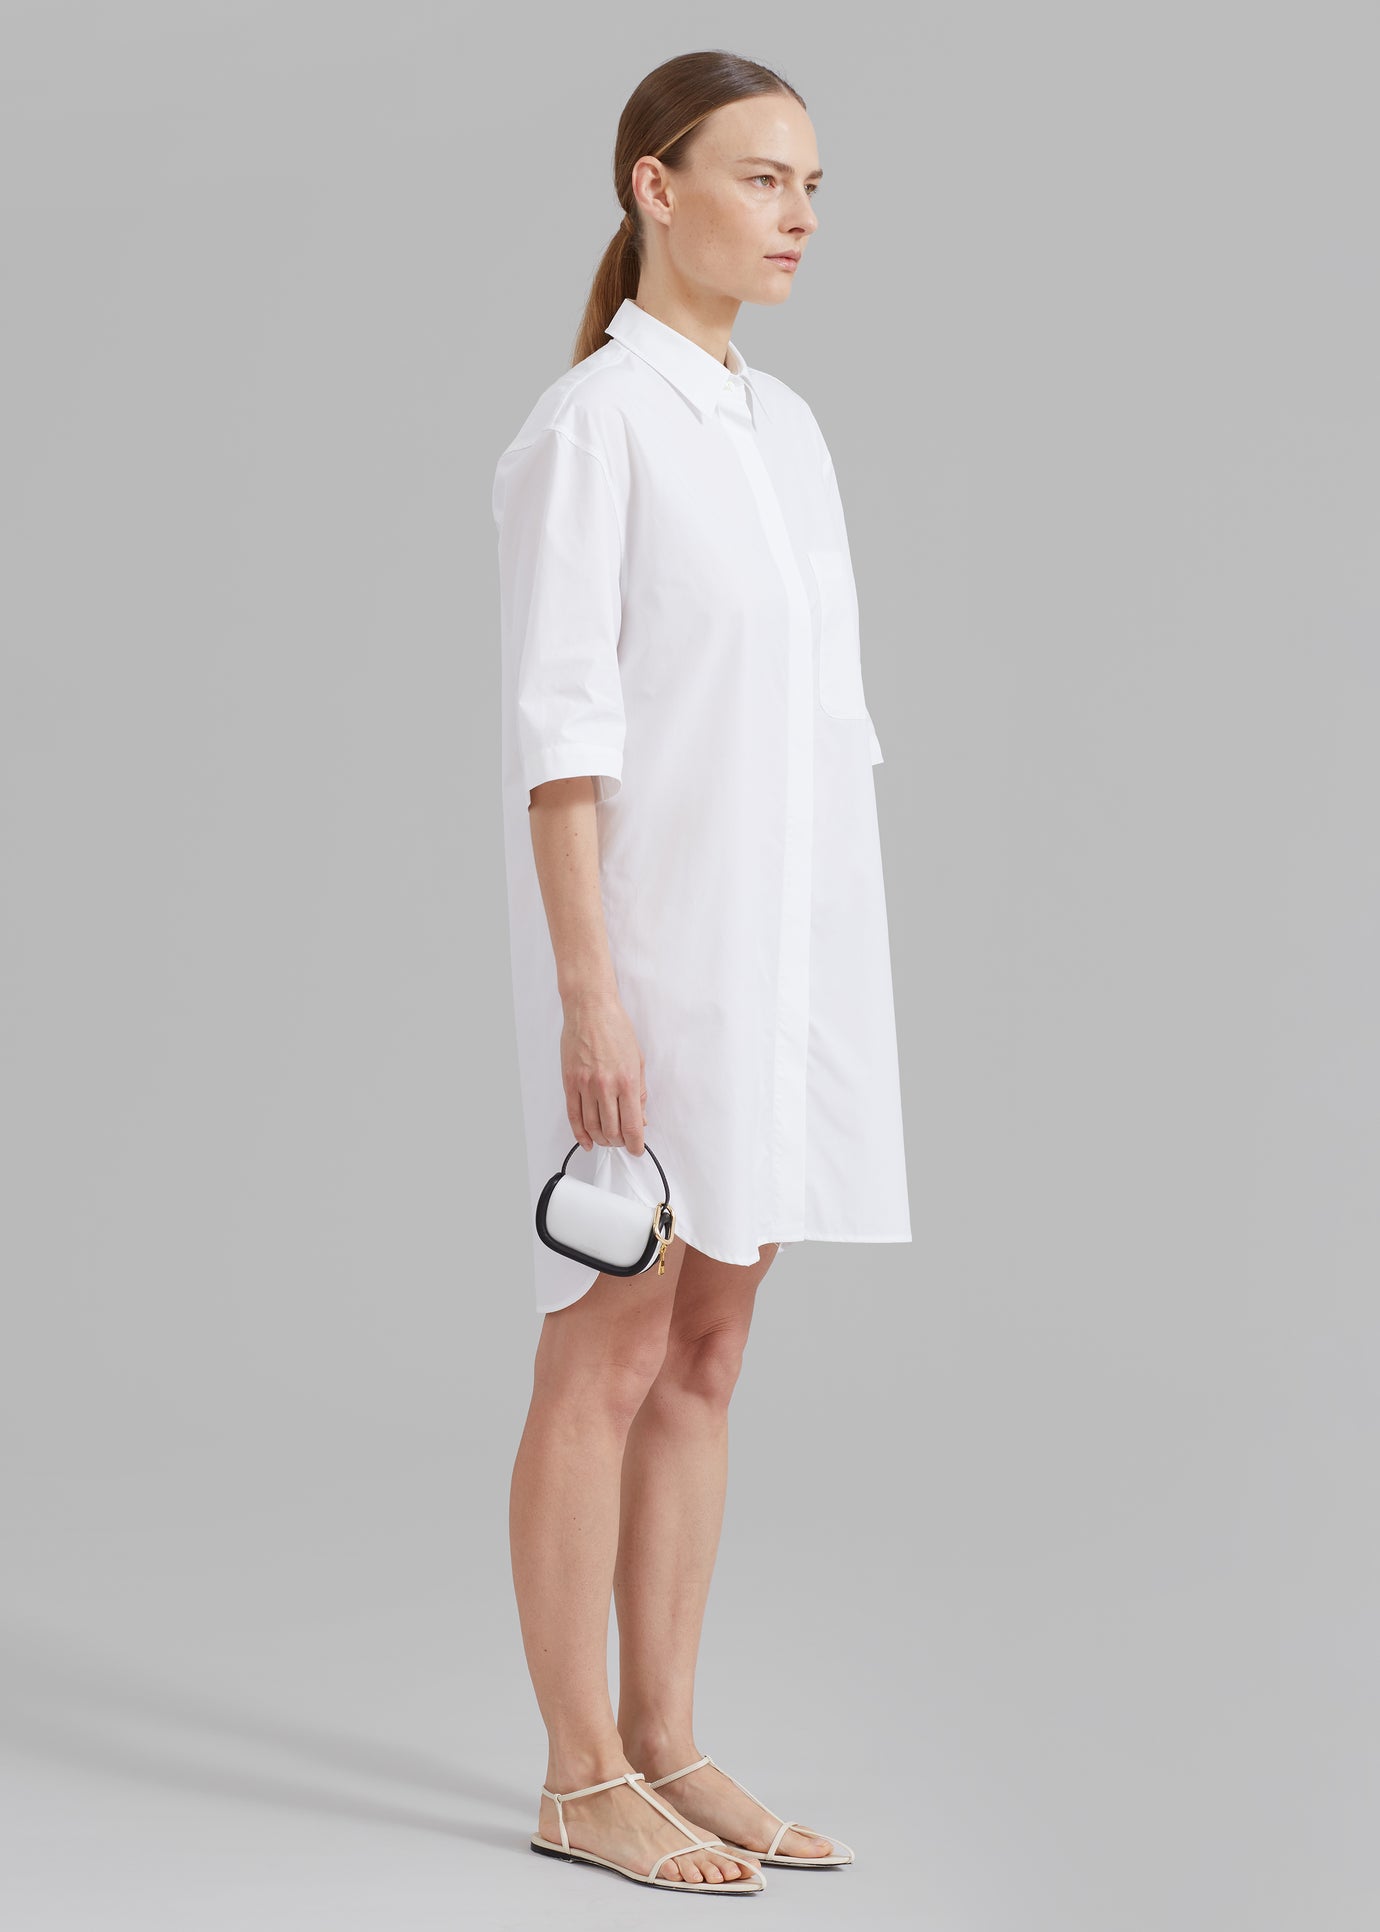 Loulou Studio Evora Shirt Dress - White - 1